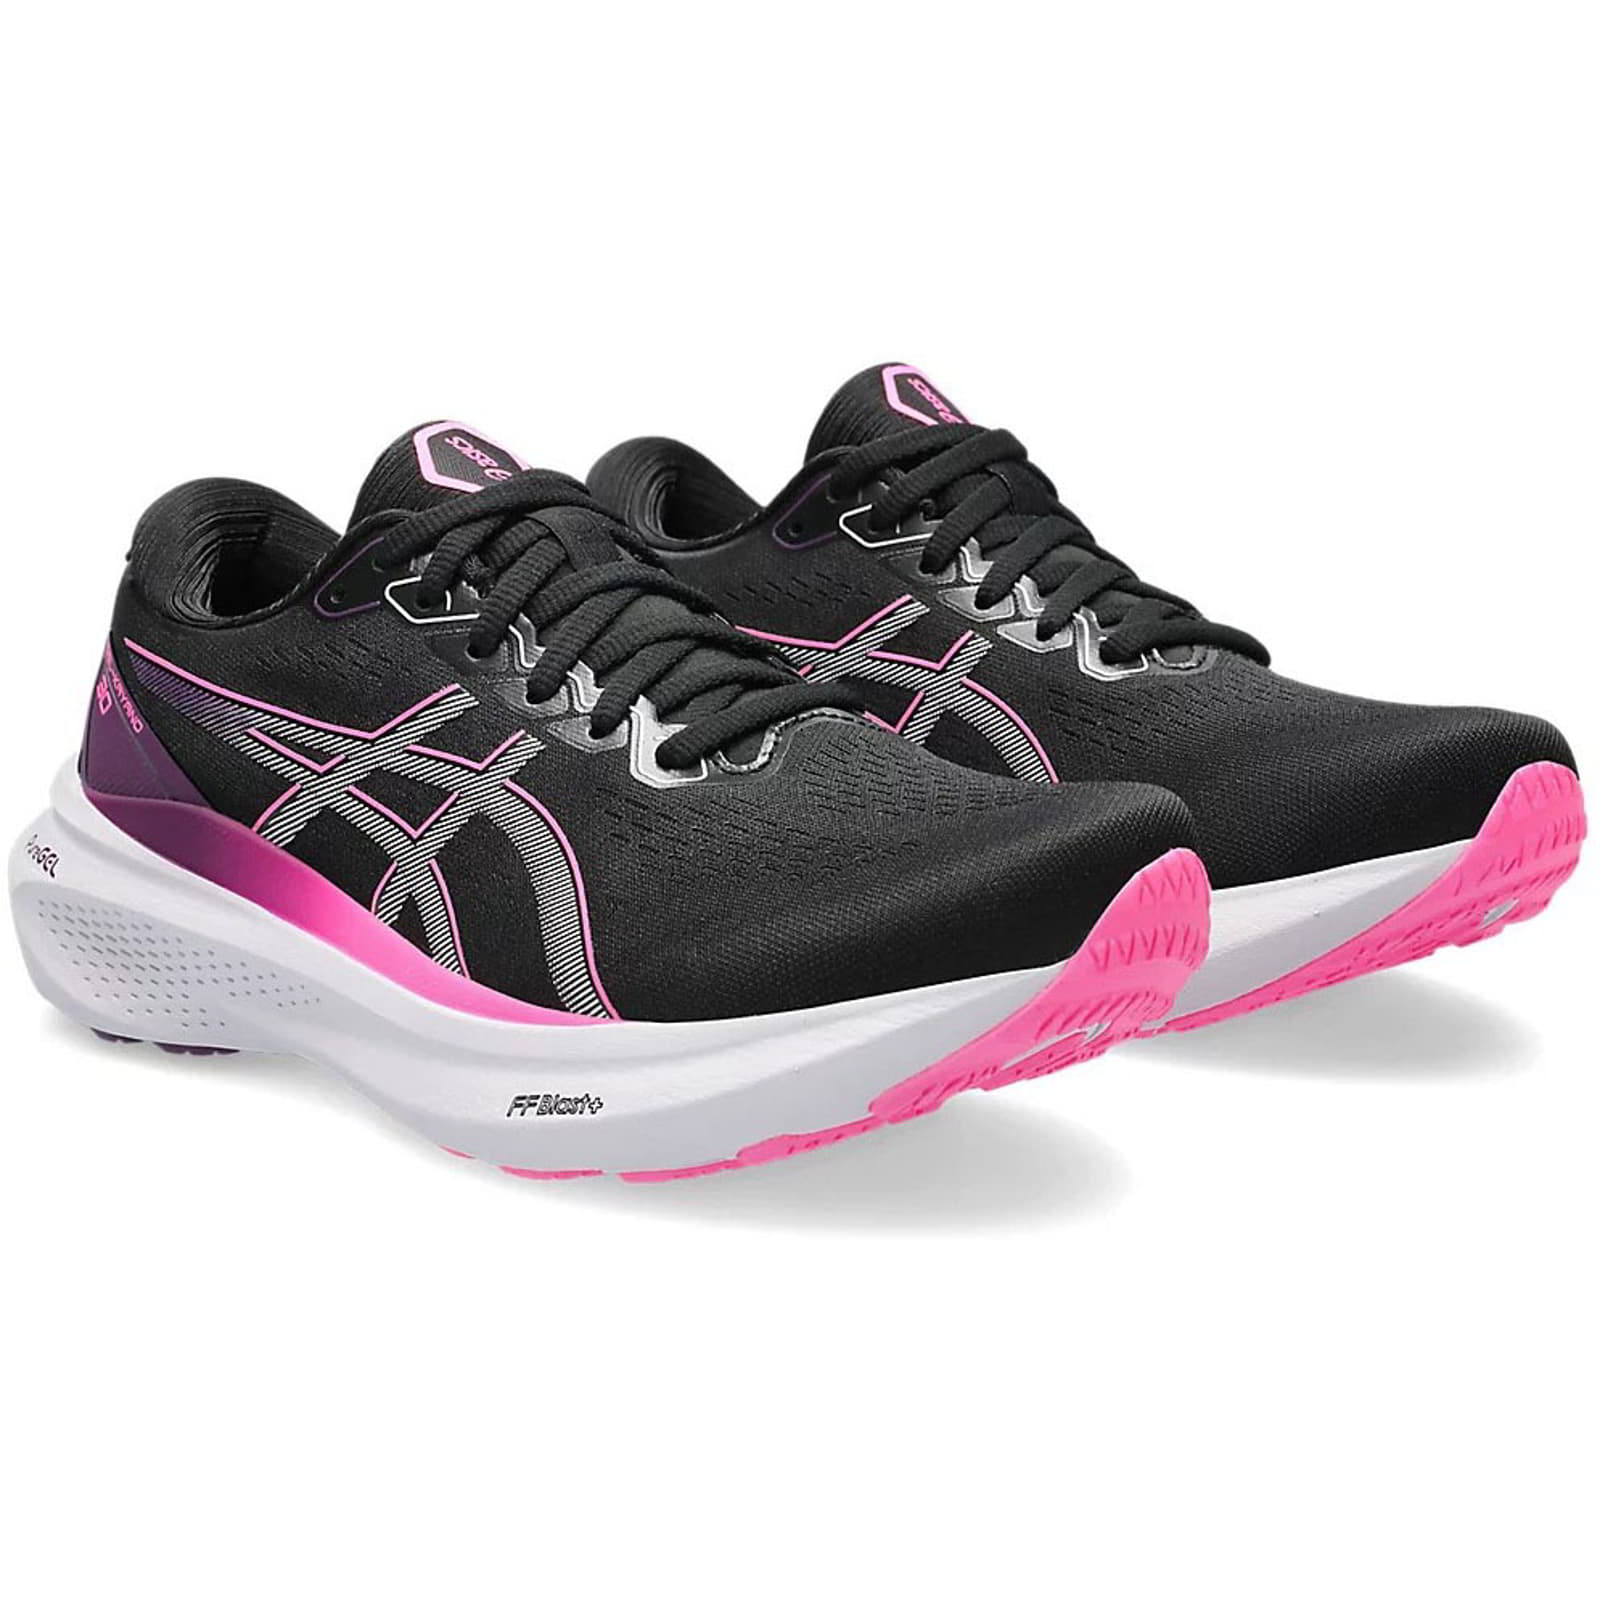 Asics Women's Gel Kayano 30 Running Shoes Trainers - UK 5.5